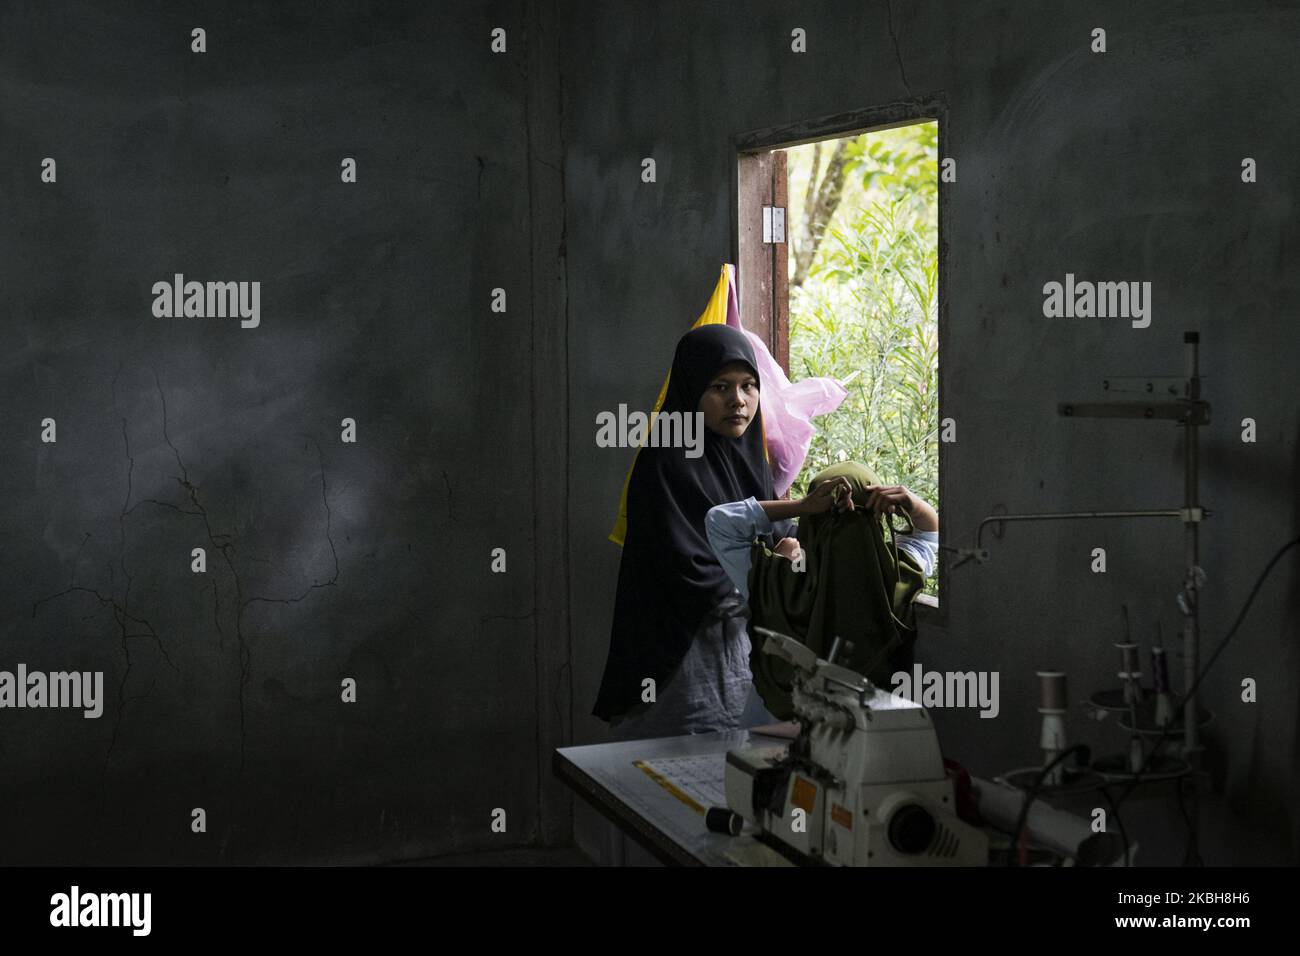 Una giovane ragazza locale raffigurata accanto alla finestra della sua casa nella provincia di Narathiwat, Thailandia meridionale, il 30 marzo 2019. Suo padre fu ucciso dalle forze di sicurezza in un sparo nelle vicinanze nel 2013. (Foto di Yusuke Harada/NurPhoto) Foto Stock